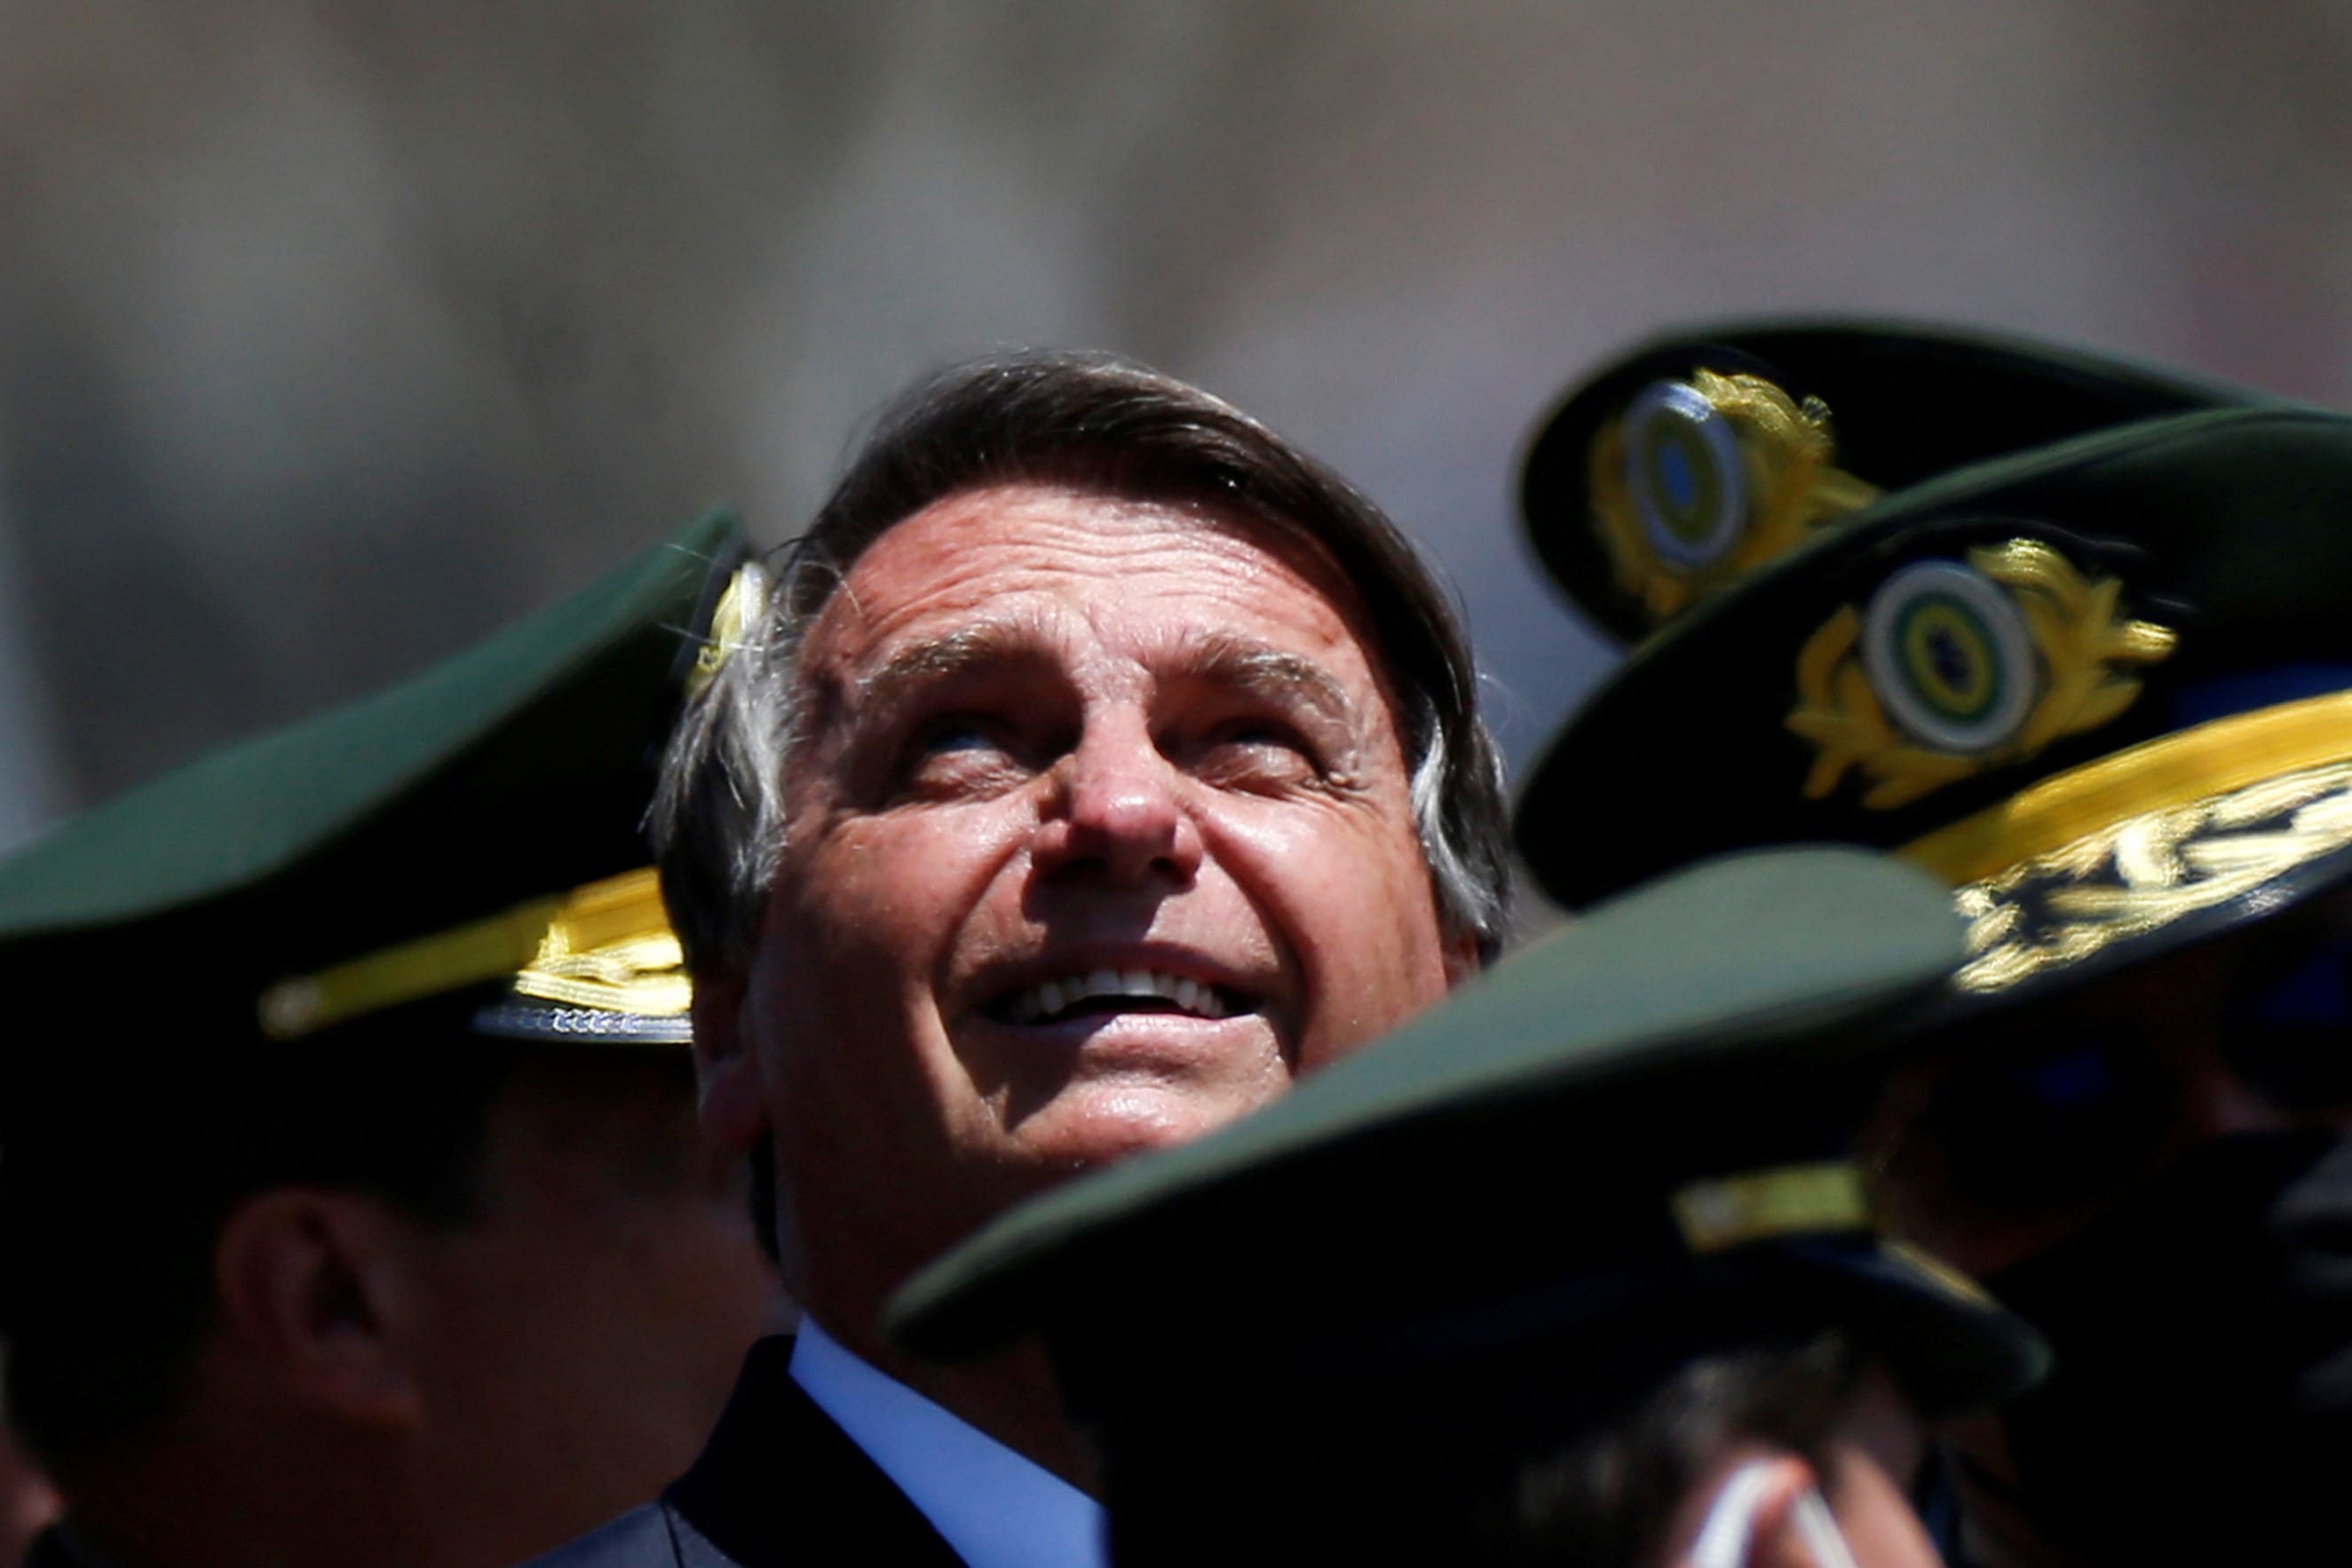 נשיא ברזיל ז'איר בולסונארו בטקס צבאי בבירה ברזיליה, 25 באוגוסט 2021